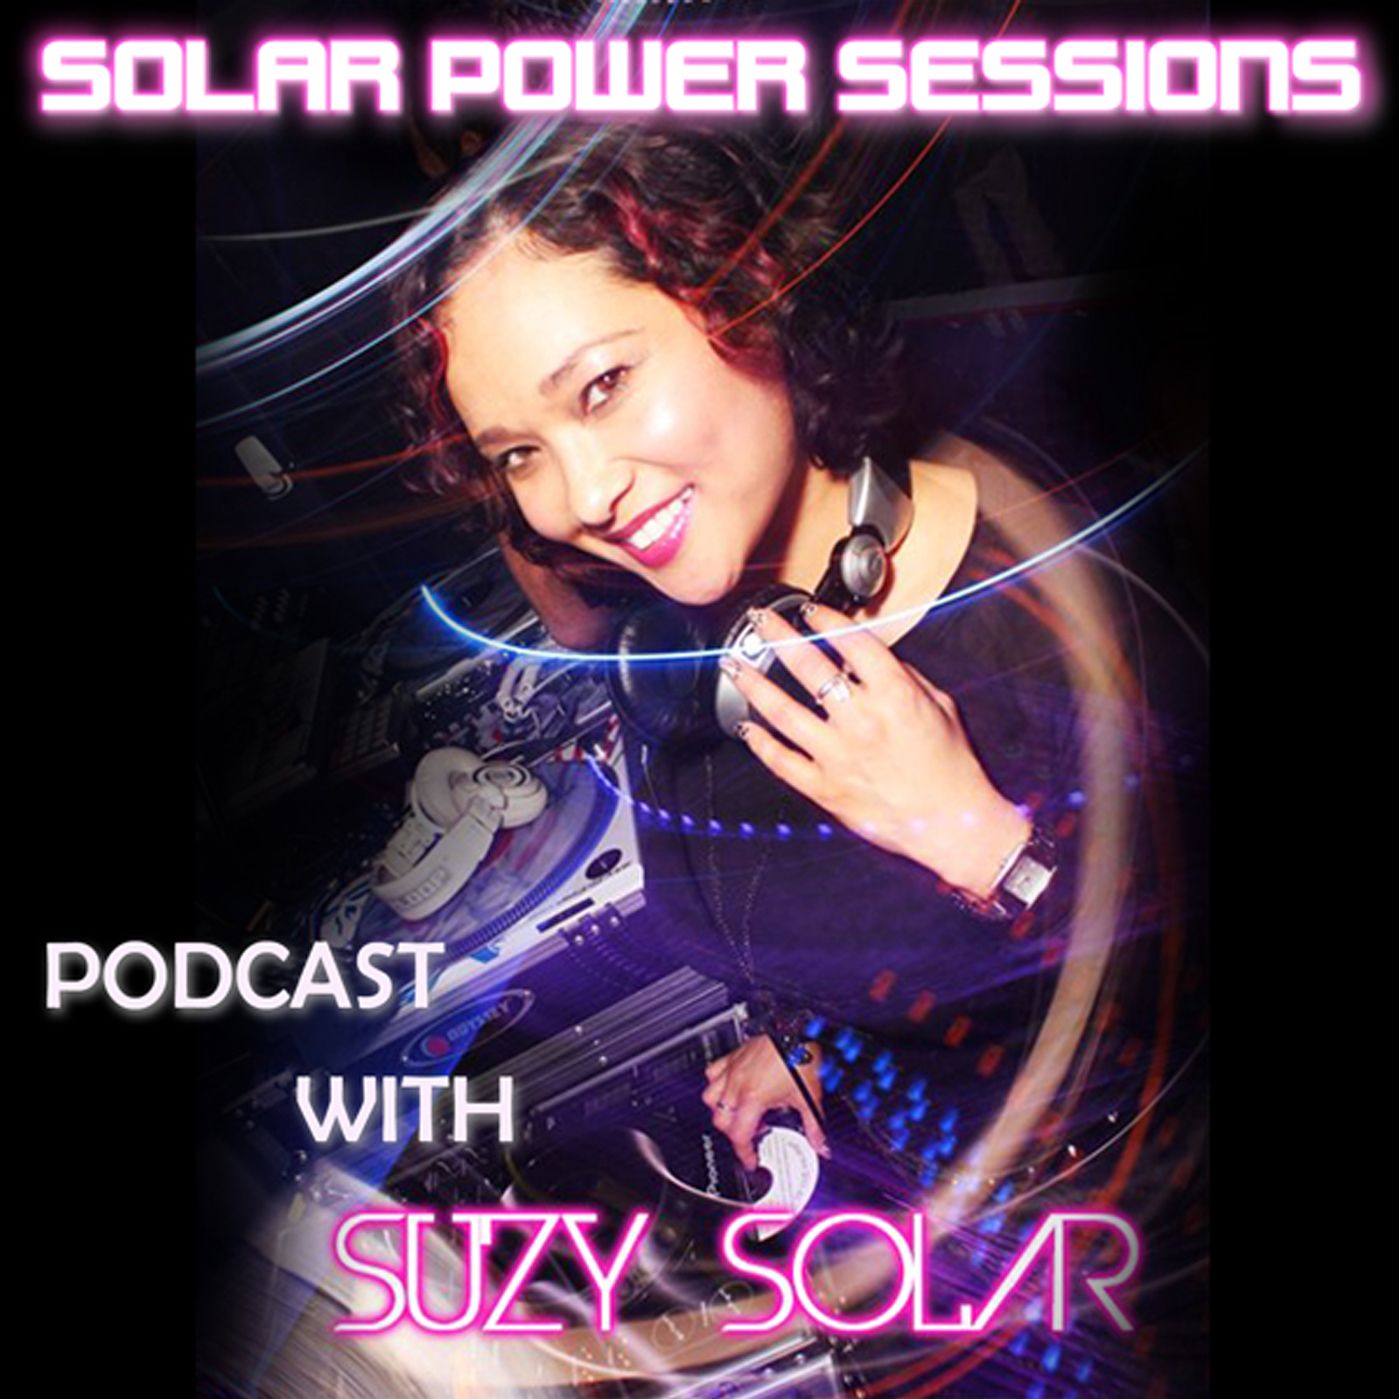 Solar Power Sessions 910 - Suzy Solar - psytrance mix